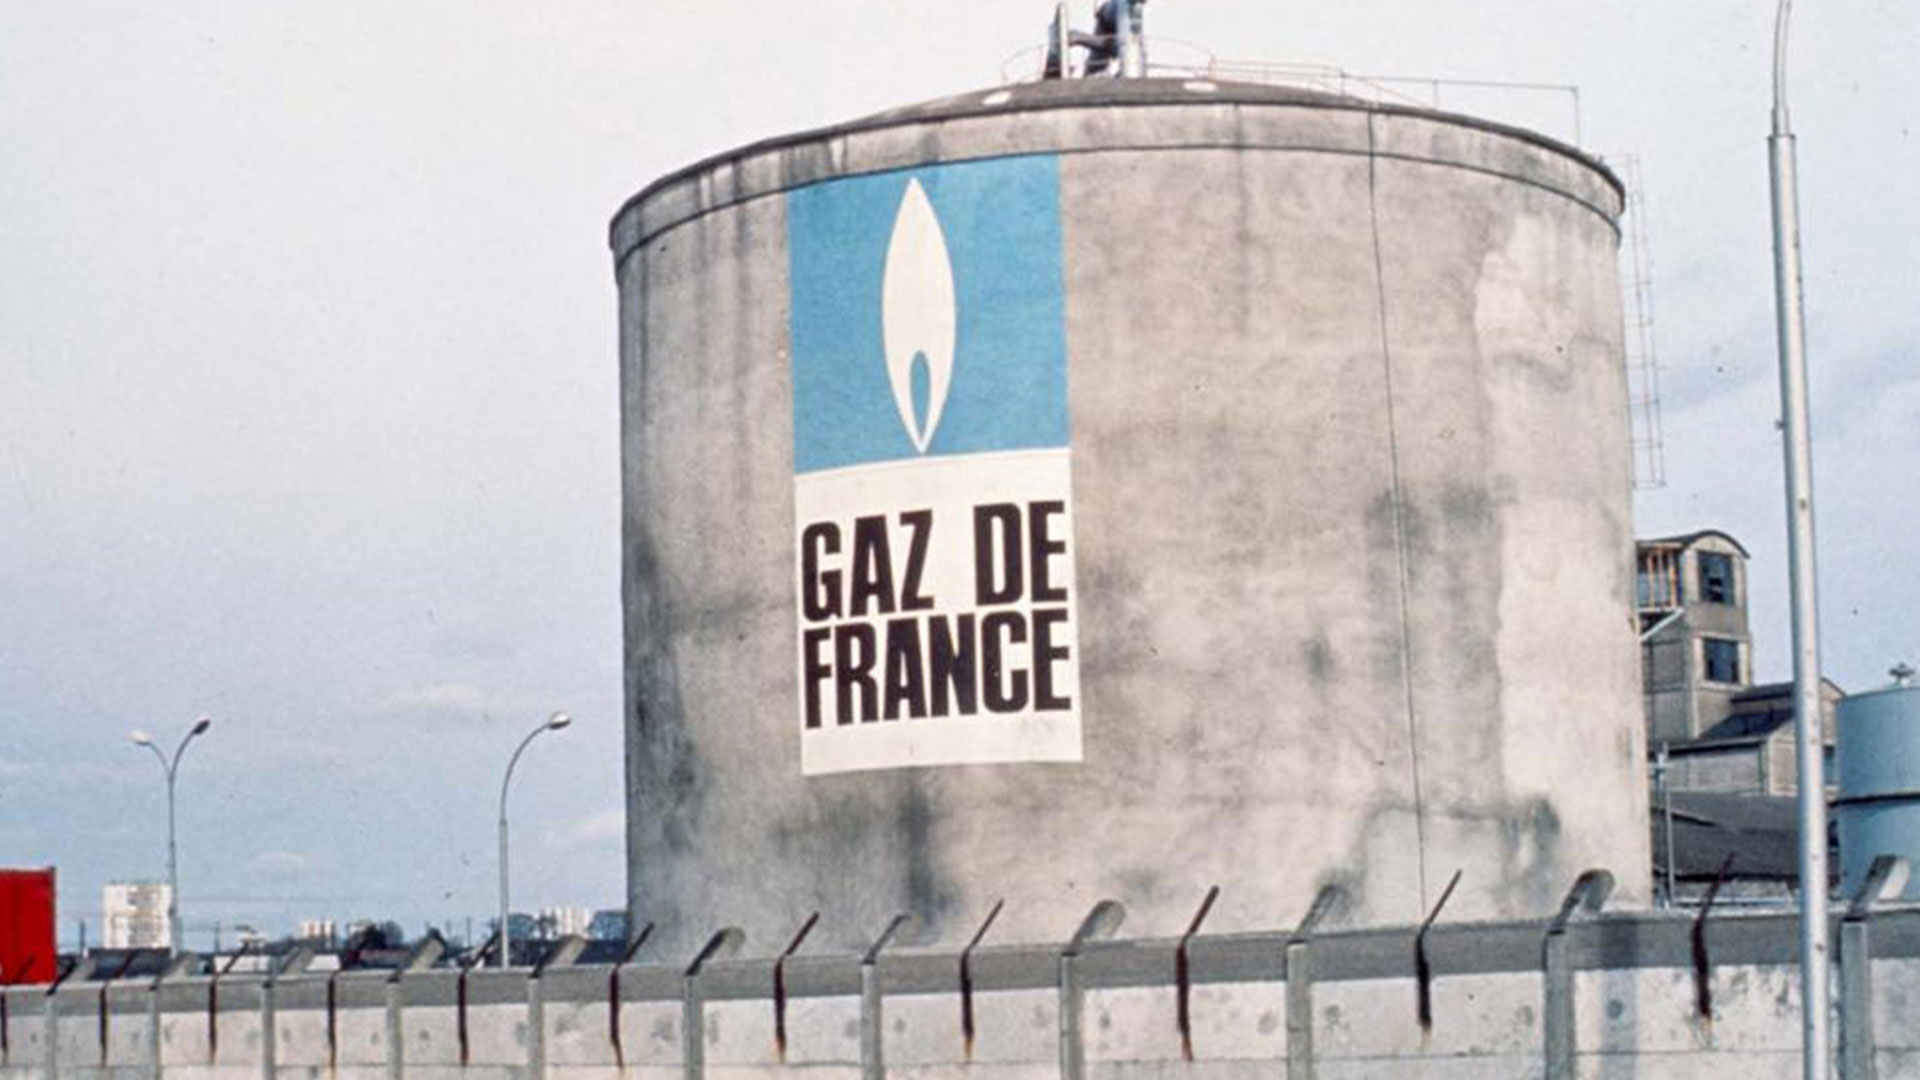 Франция газ россия. Франция ГАЗ. GDF Suez Франция. Французская газовая компания Gas de France. FORGAZ logo gaz de France.